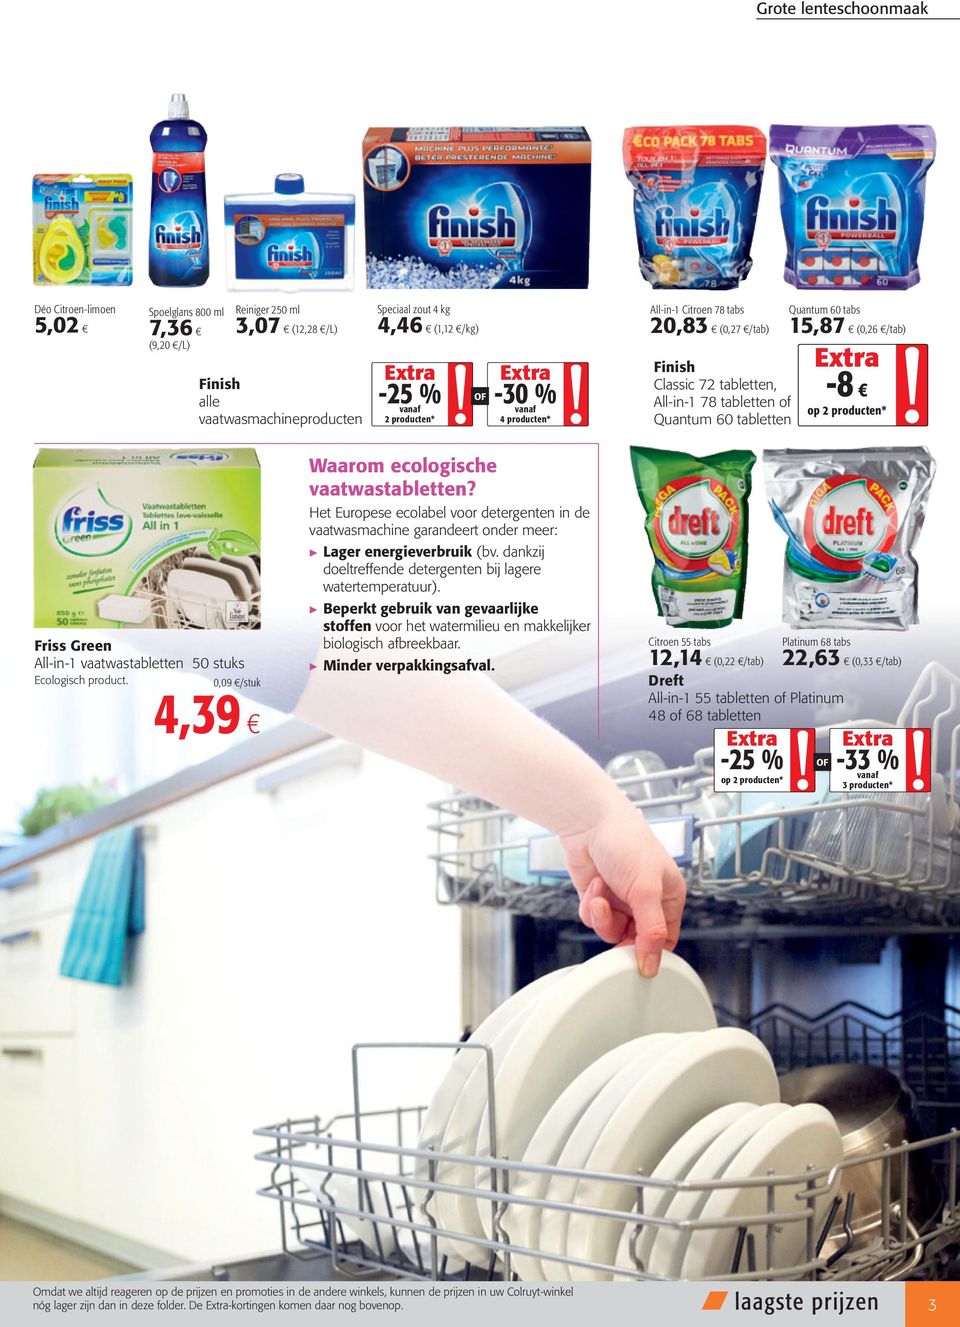 Ecologisch product. 0,09 /stuk 4,39 Waarom ecologische vaatwastabletten? Het Europese ecolabel voor detergenten in de vaatwasmachine garandeert onder meer: Lager energieverbruik (bv.